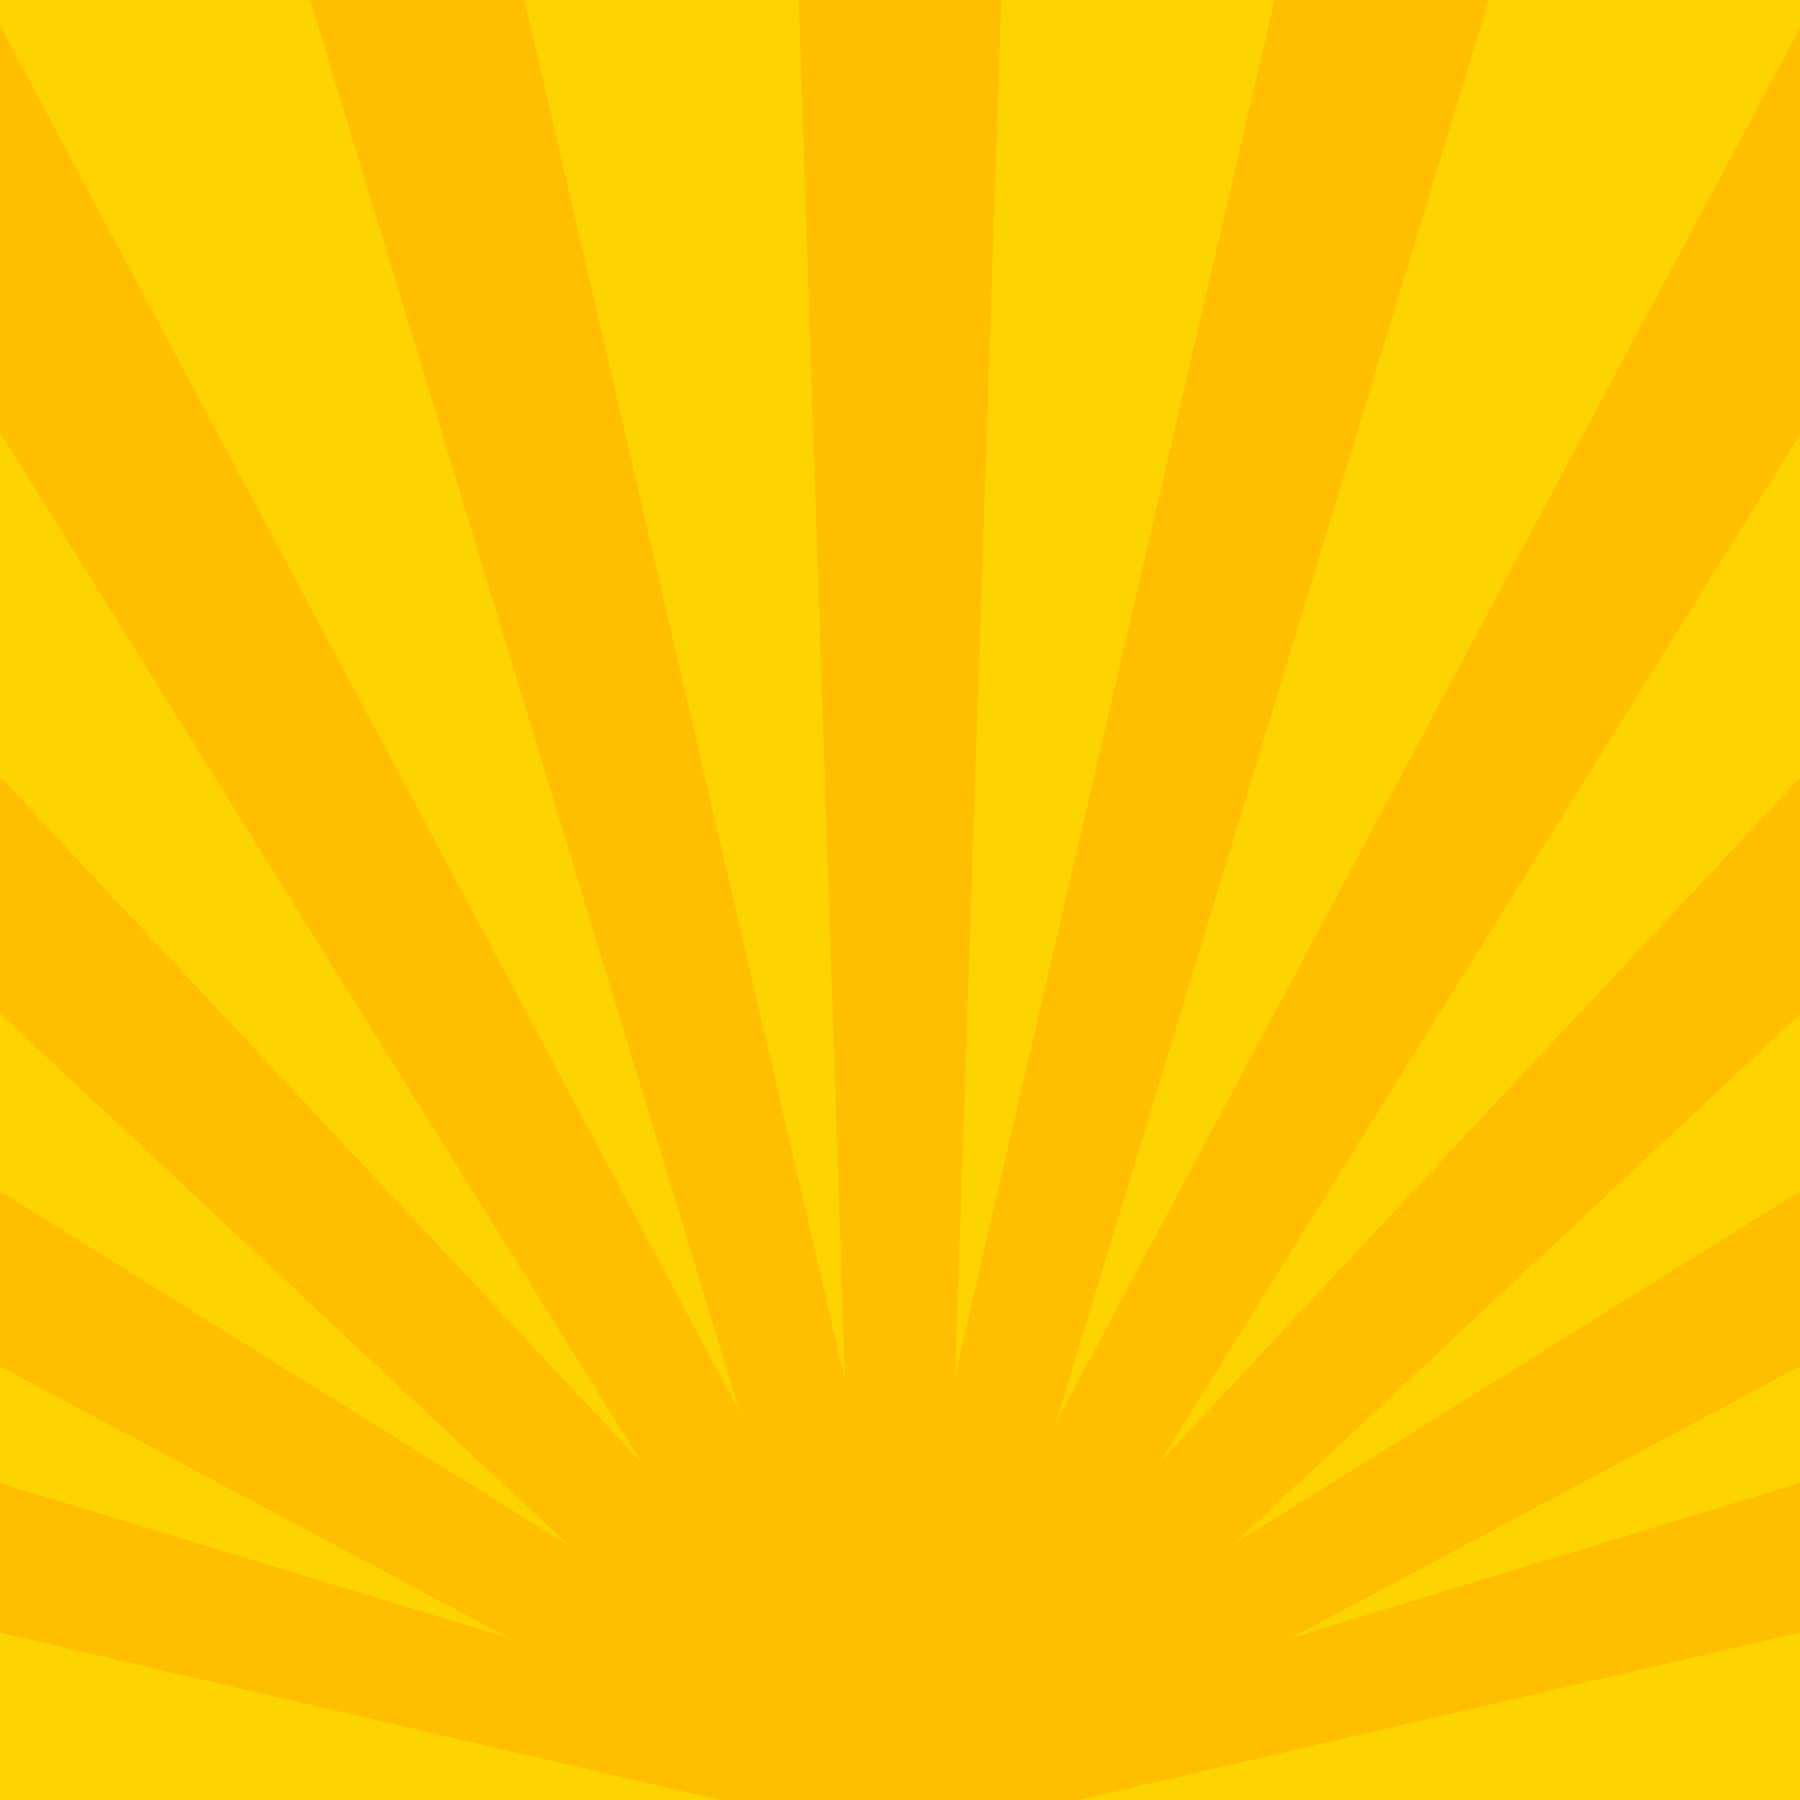 Yellow and Orange Sunburst Background